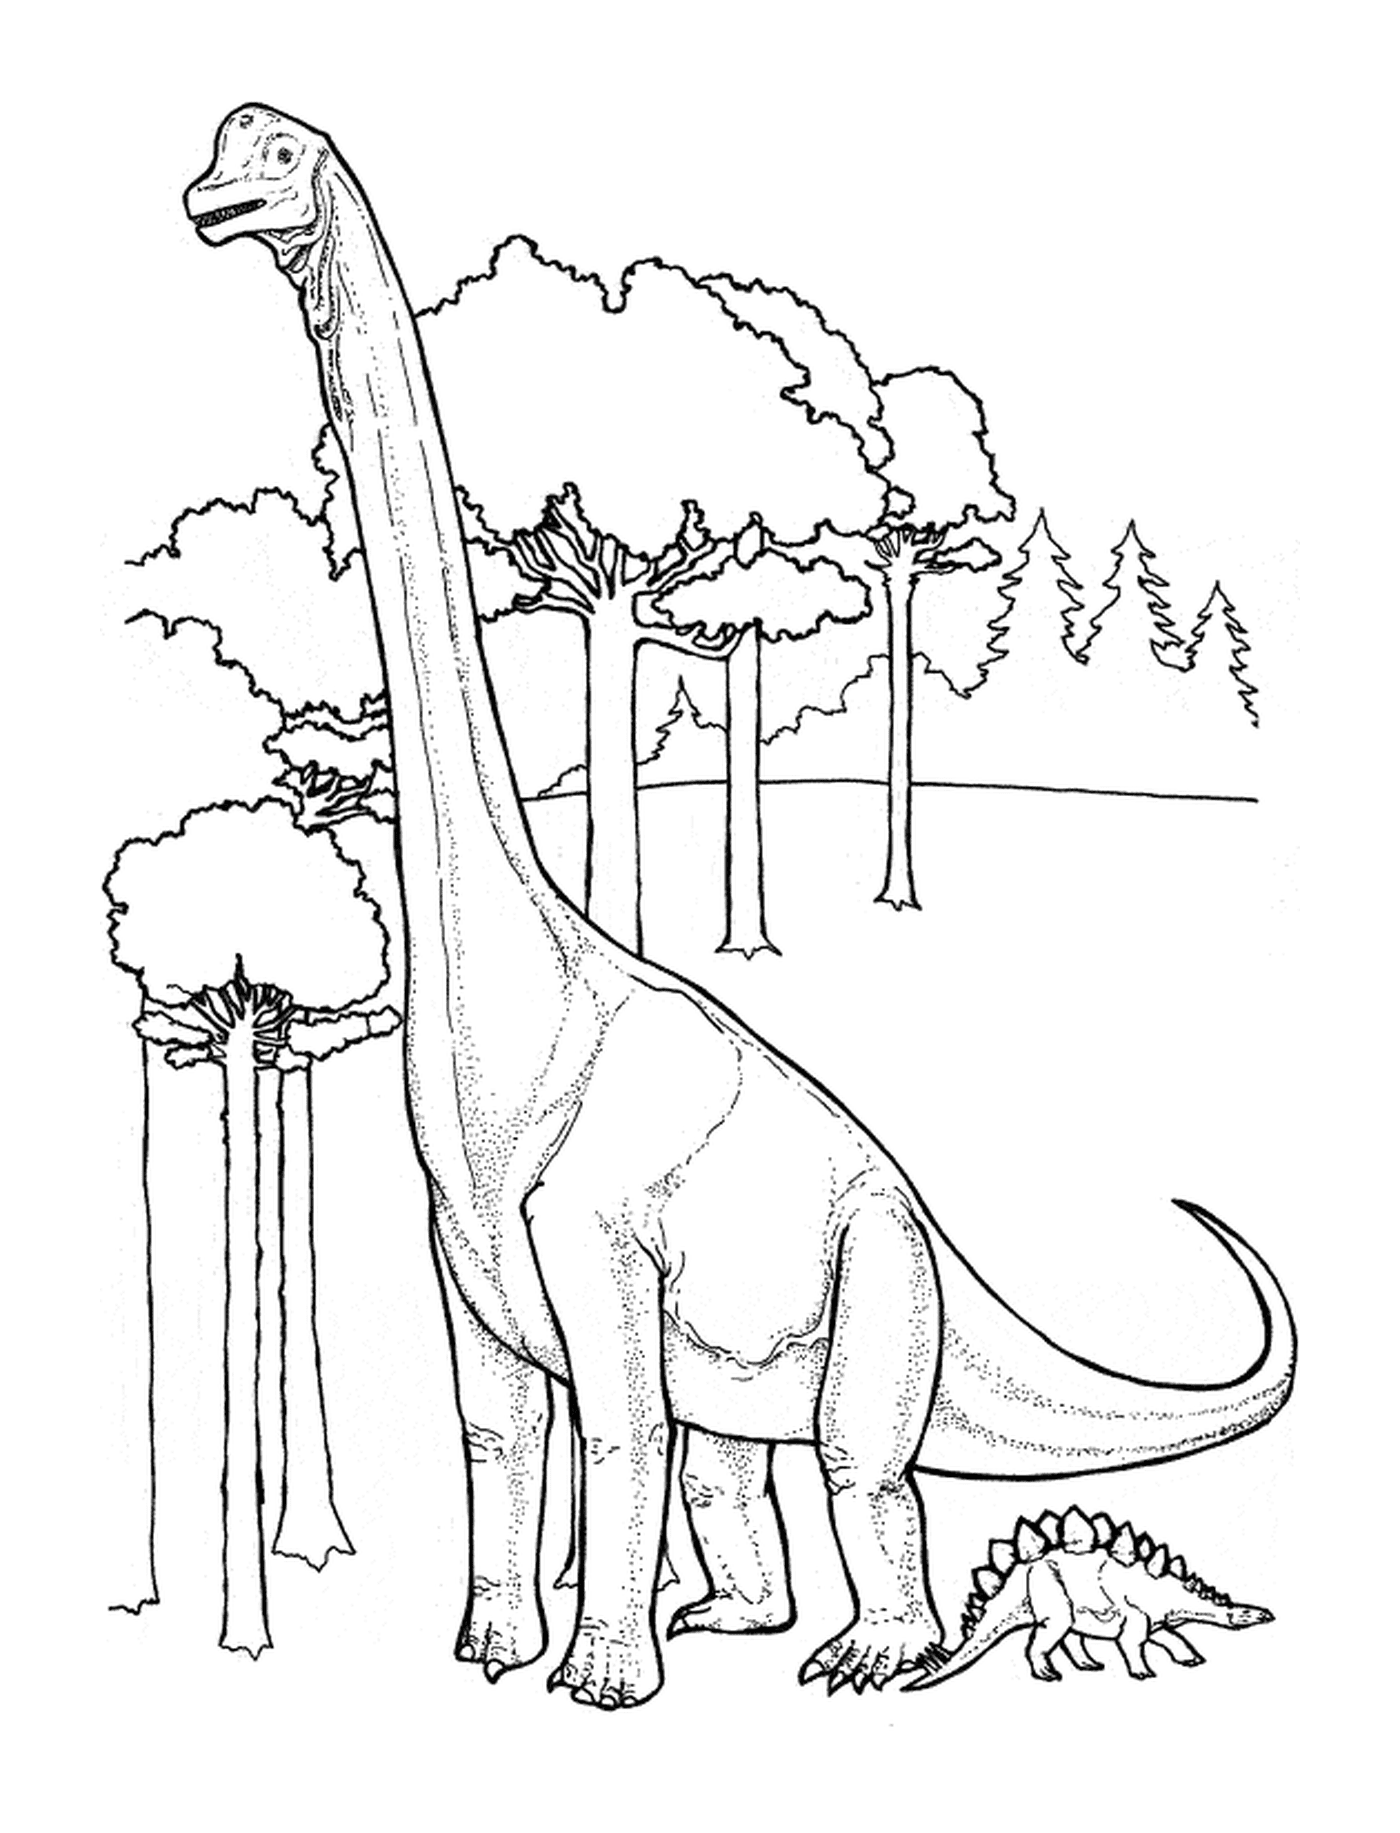  Dinosaurio de pie en un bosque exuberante 